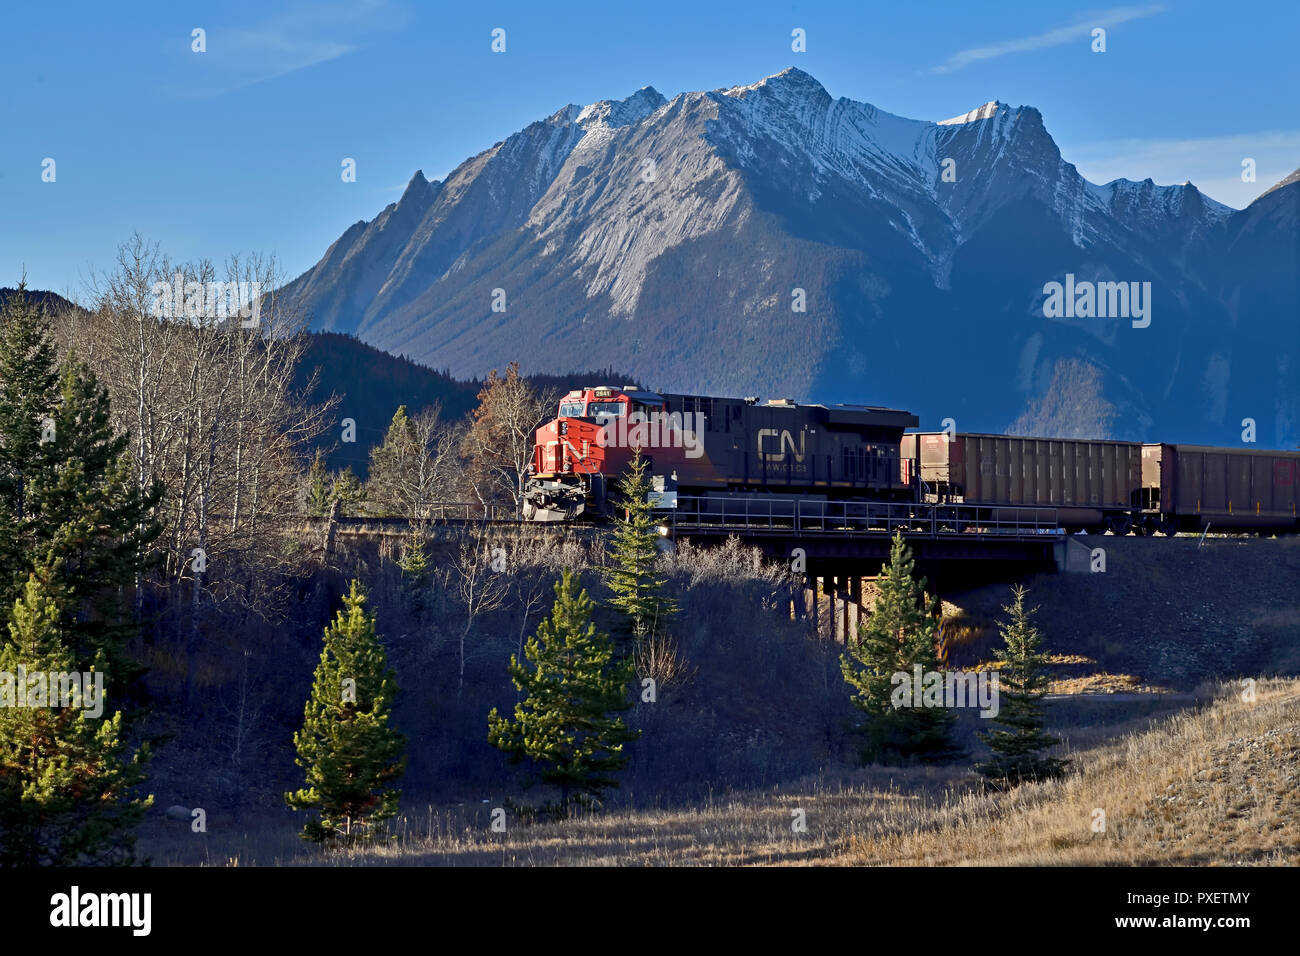 Eine kanadische National Freight Train Crossing eine Stahlbrücke in Jasper National Park, Alberta, Kanada. Stockfoto